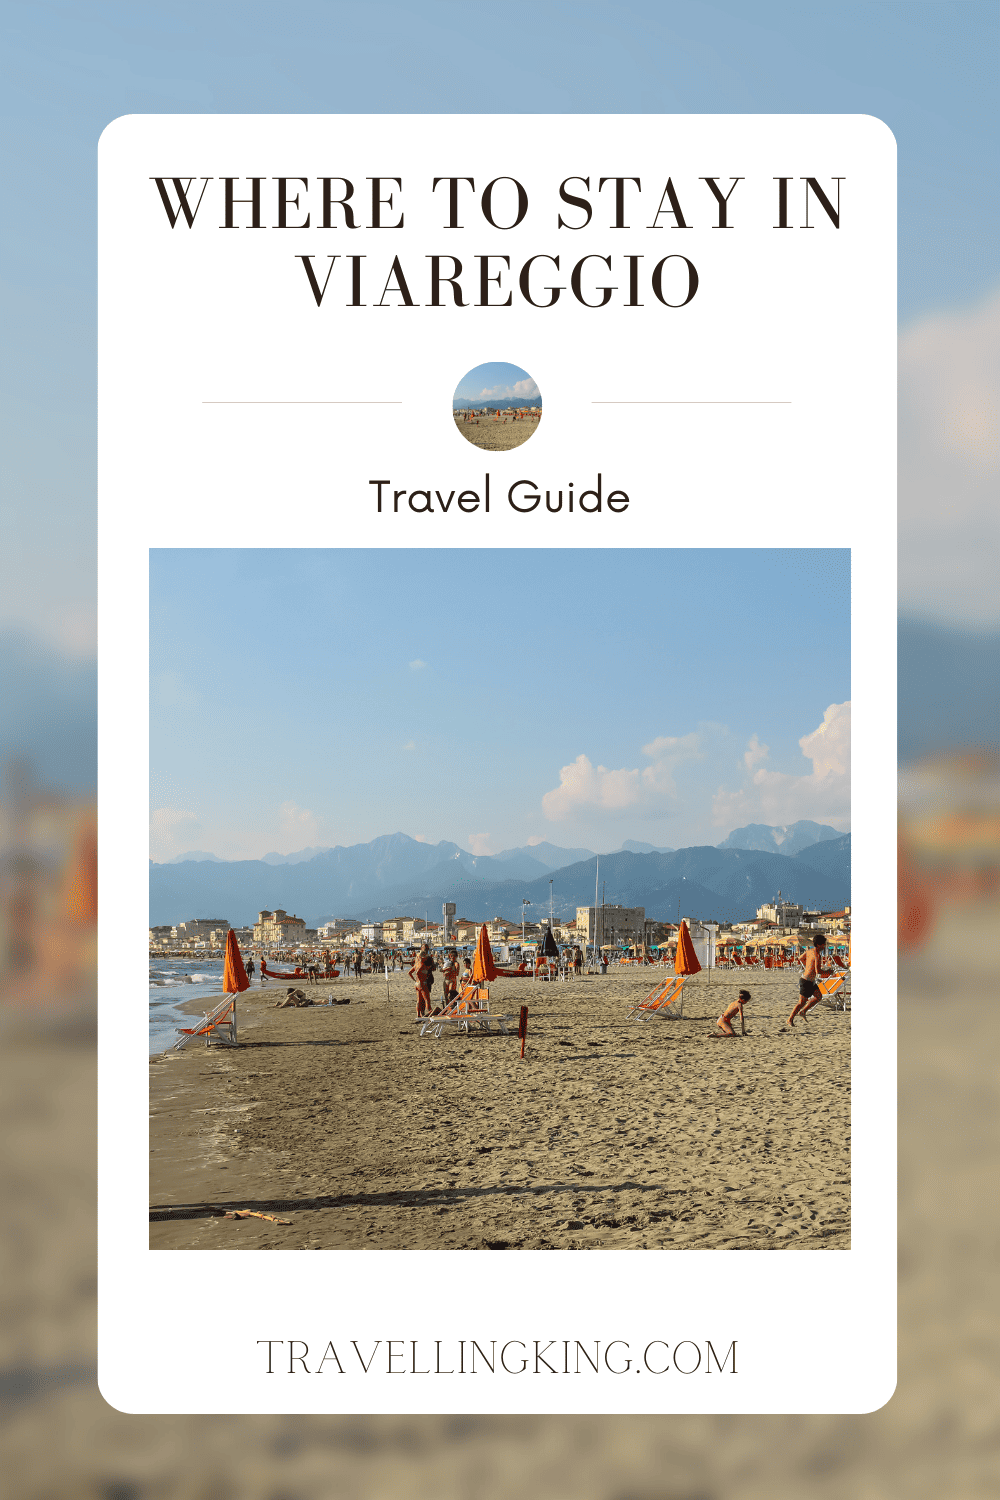 Where to stay in Viareggio